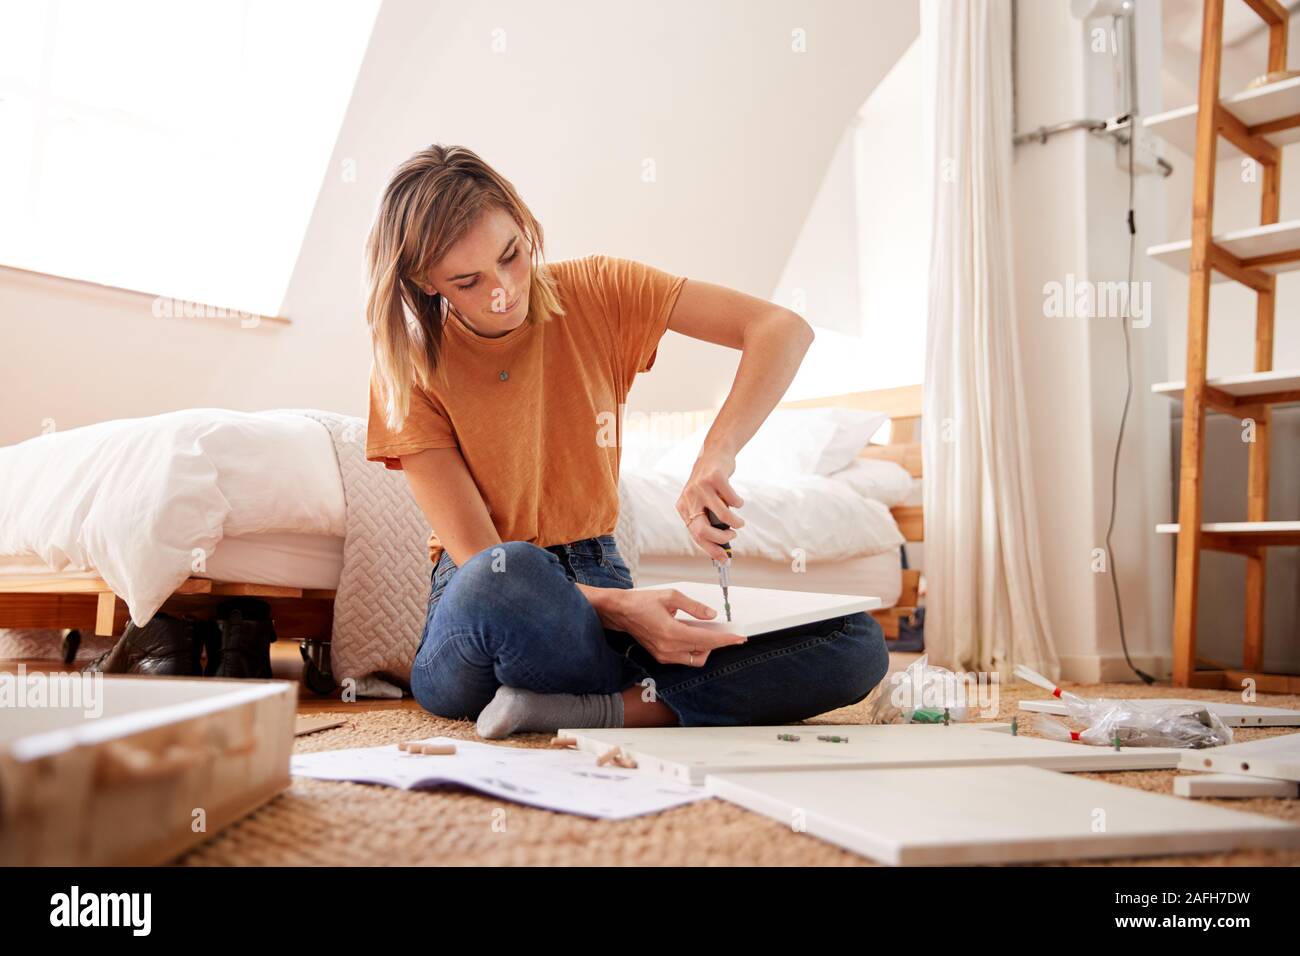 Woman in New Home Mettre Ensemble de meubles à assembler soi-même Banque D'Images